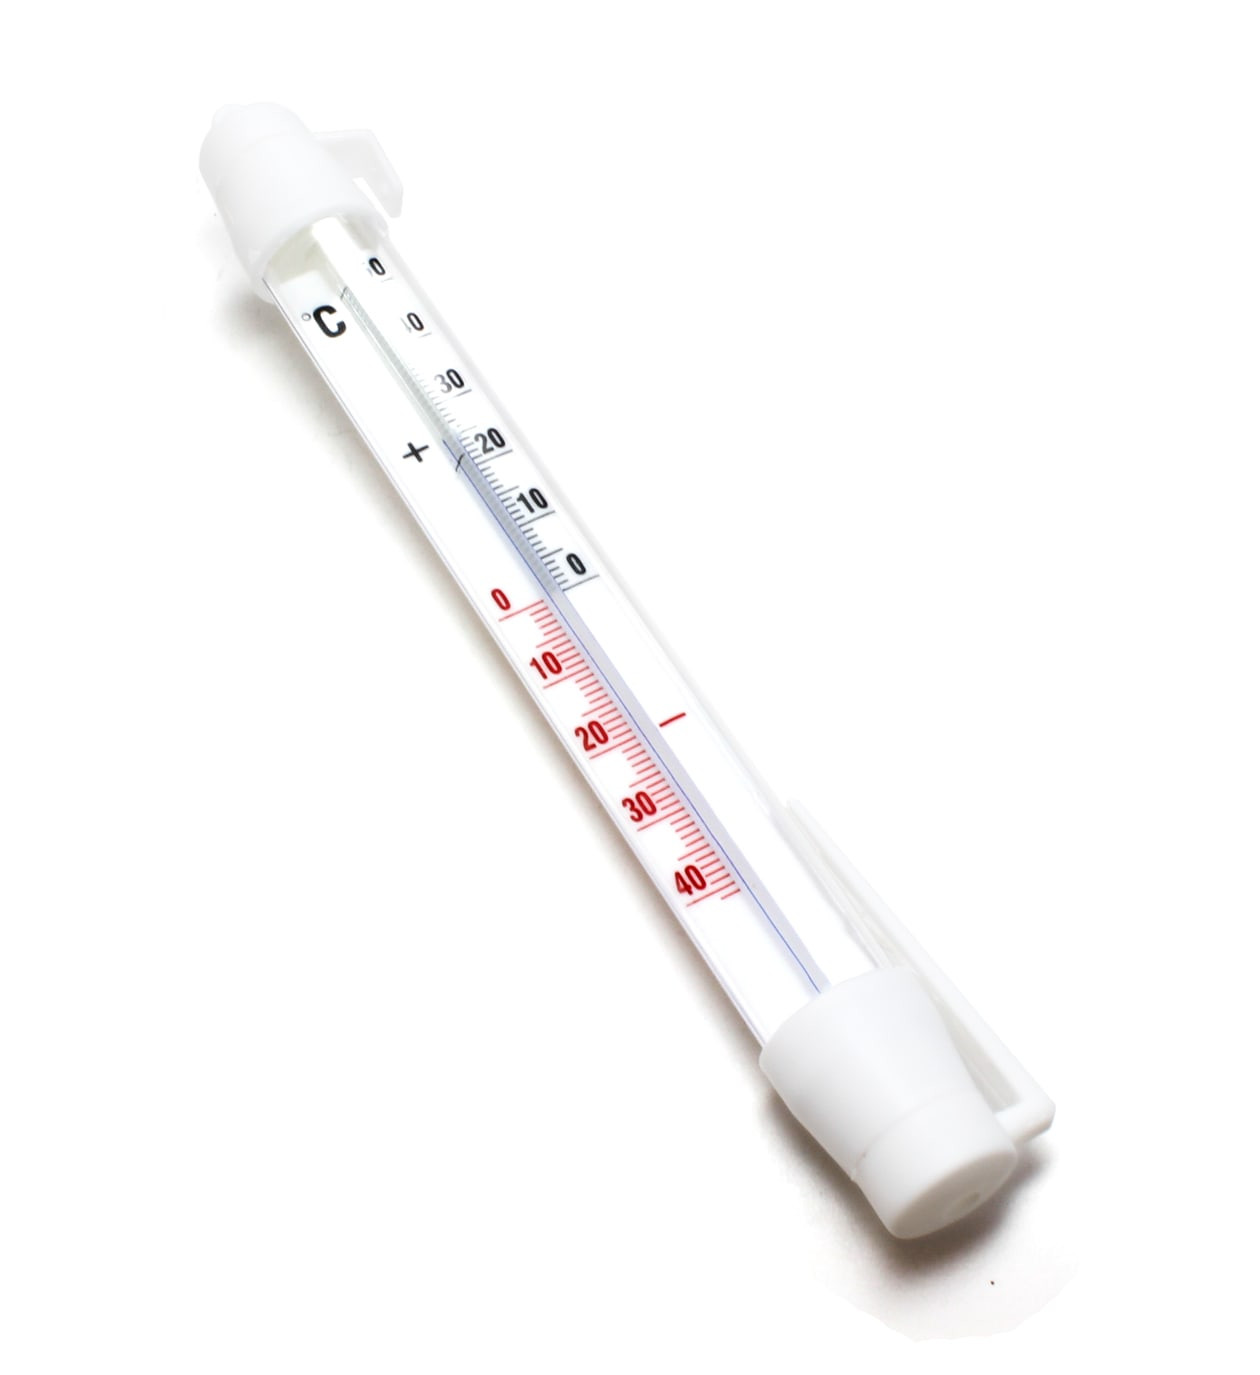 thermomètre pour congélateur et pour réfrigérateur degré celsius +50/-40